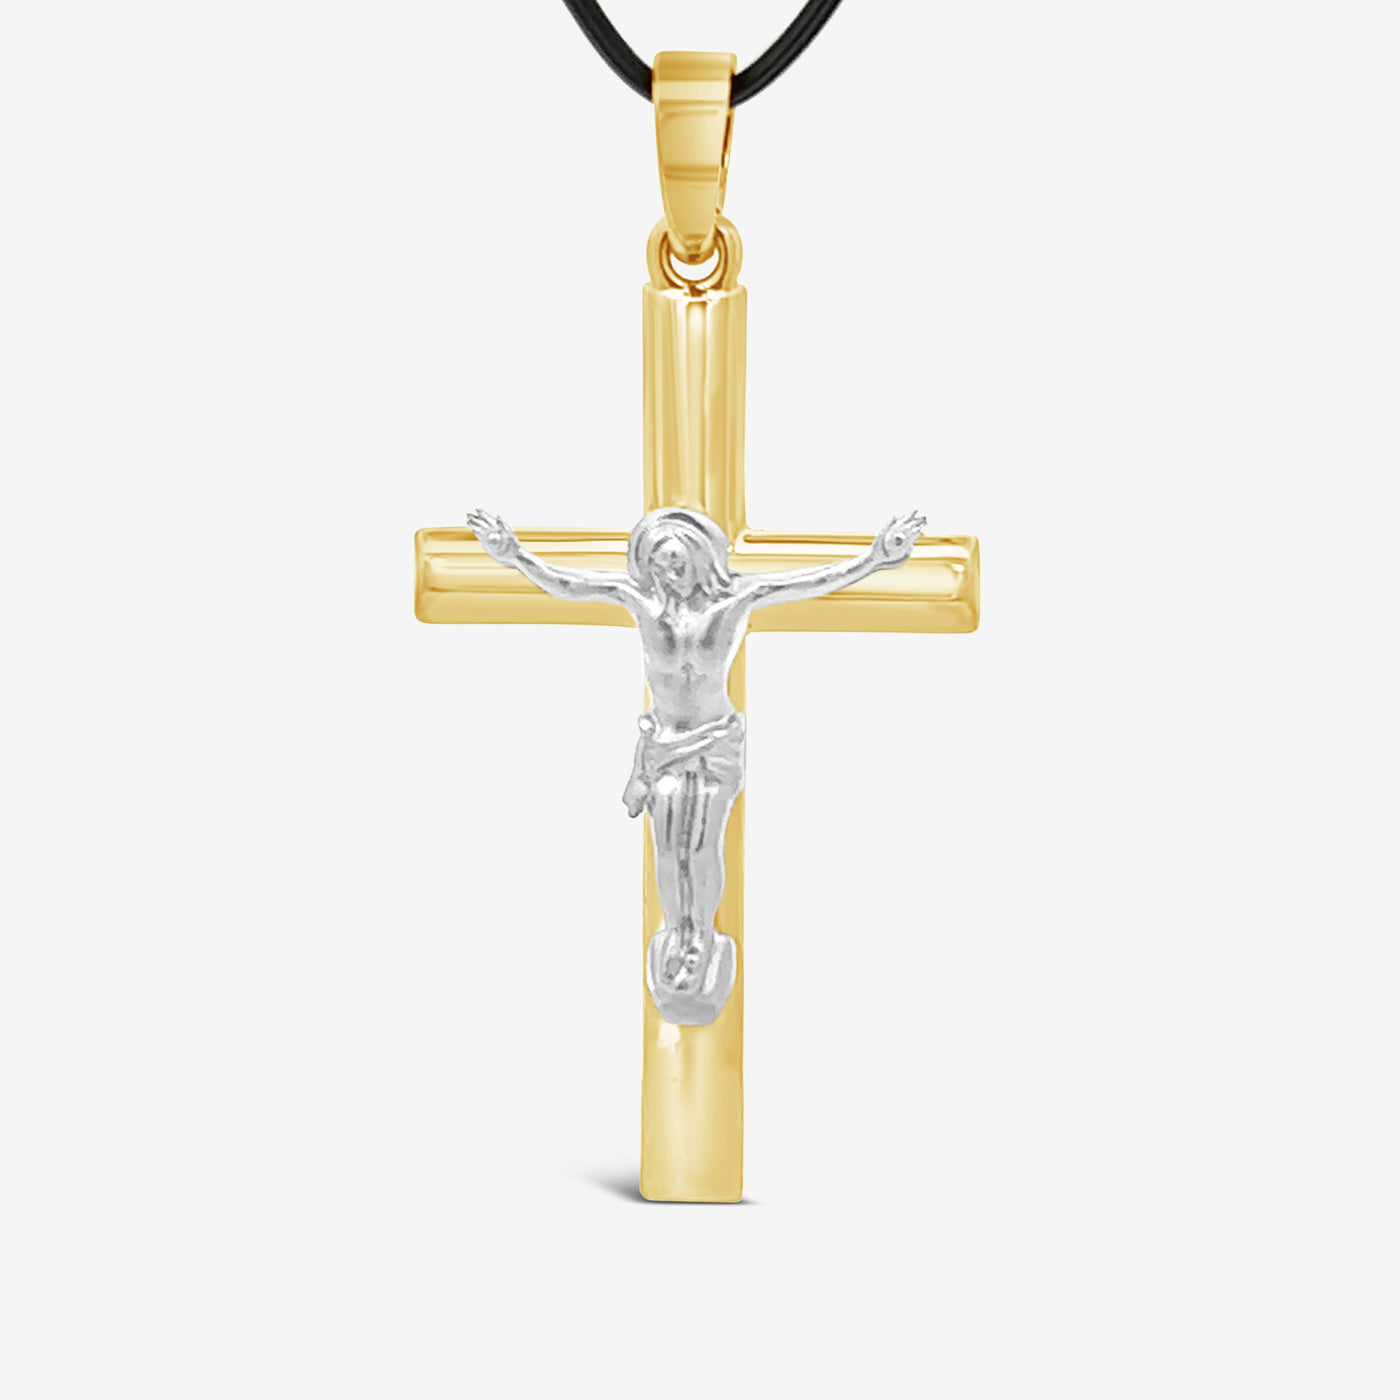 The Crucifix Cross